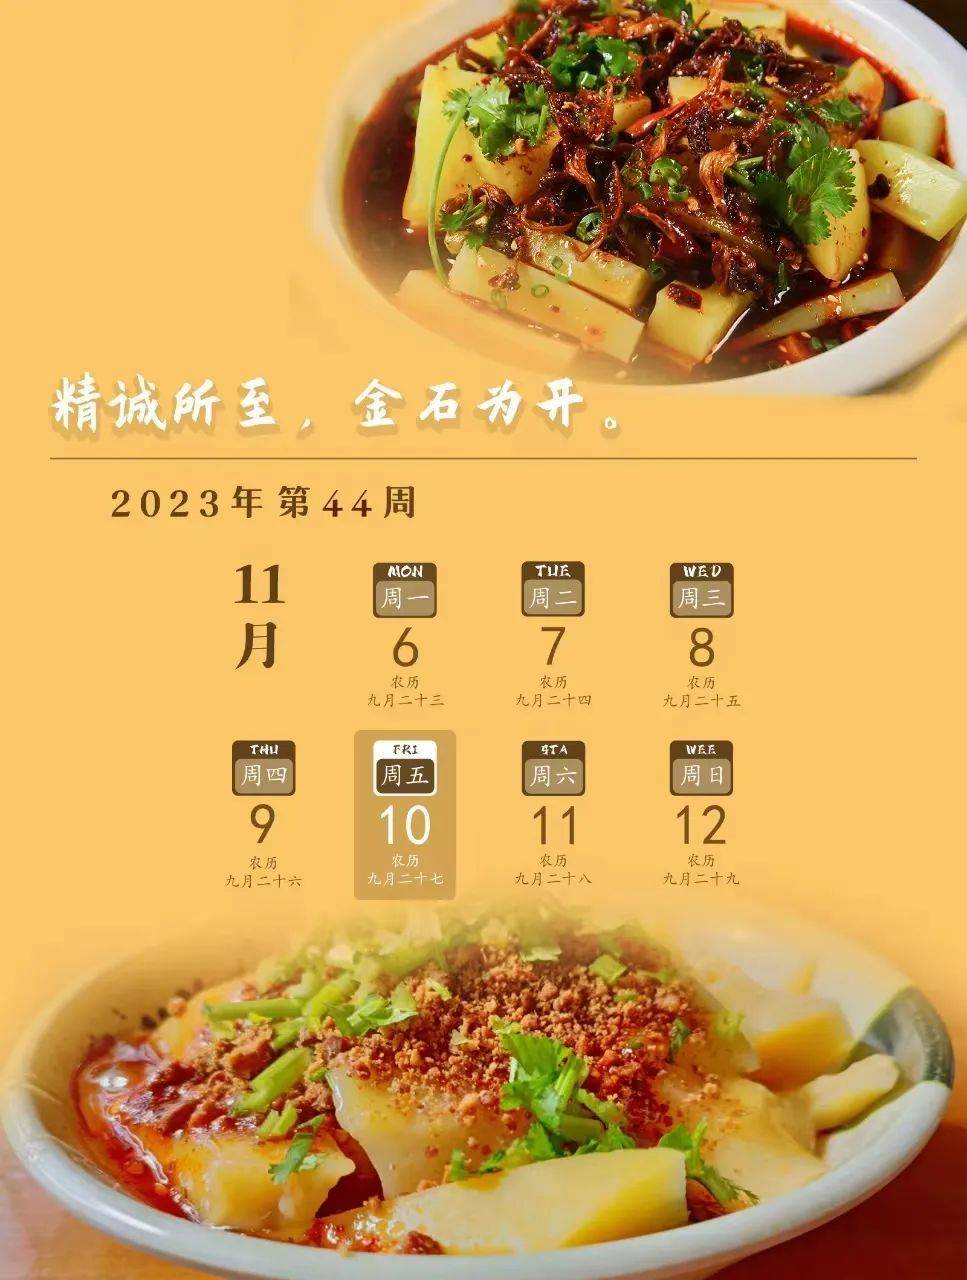 乐享云南 | 美食·呈贡豌豆粉